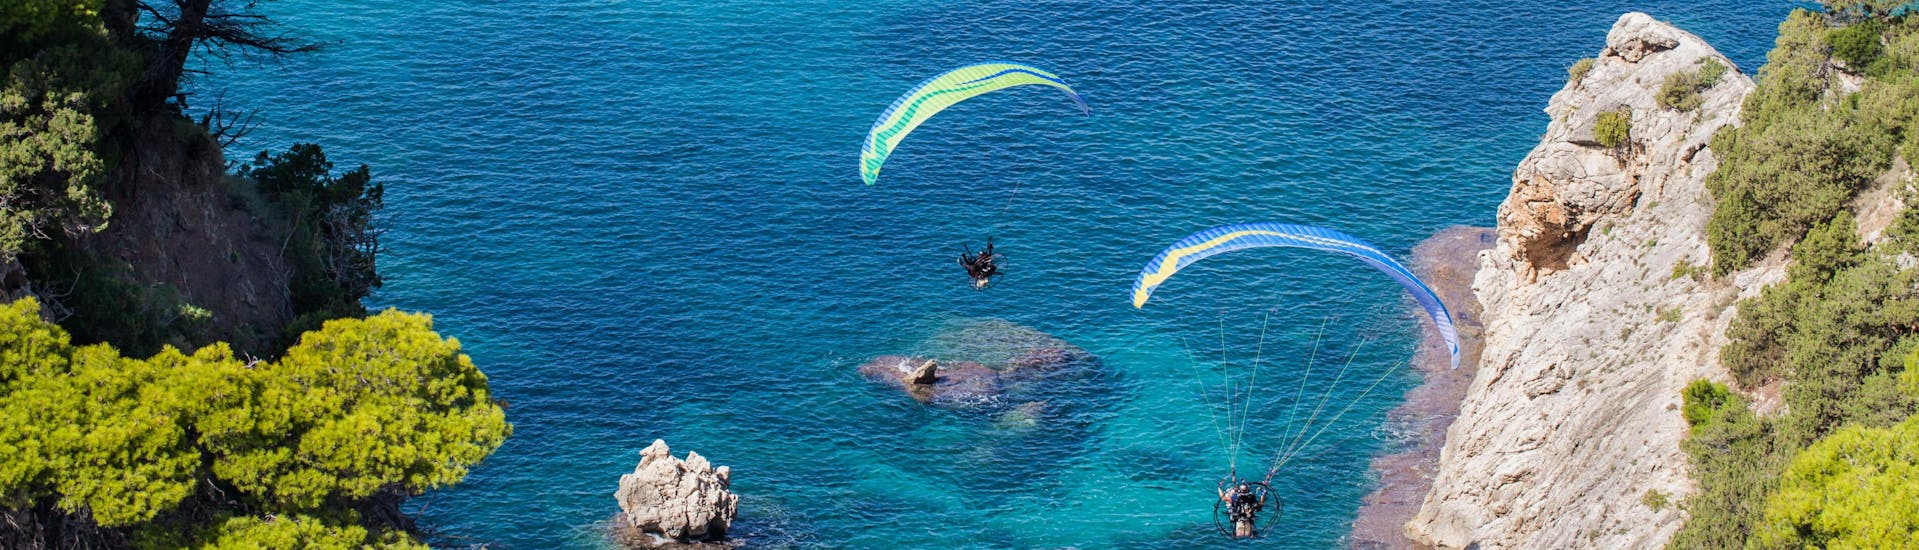 Varipetro: Een tandemvlucht vindt plaats in een van de hotspots voor paragliding.